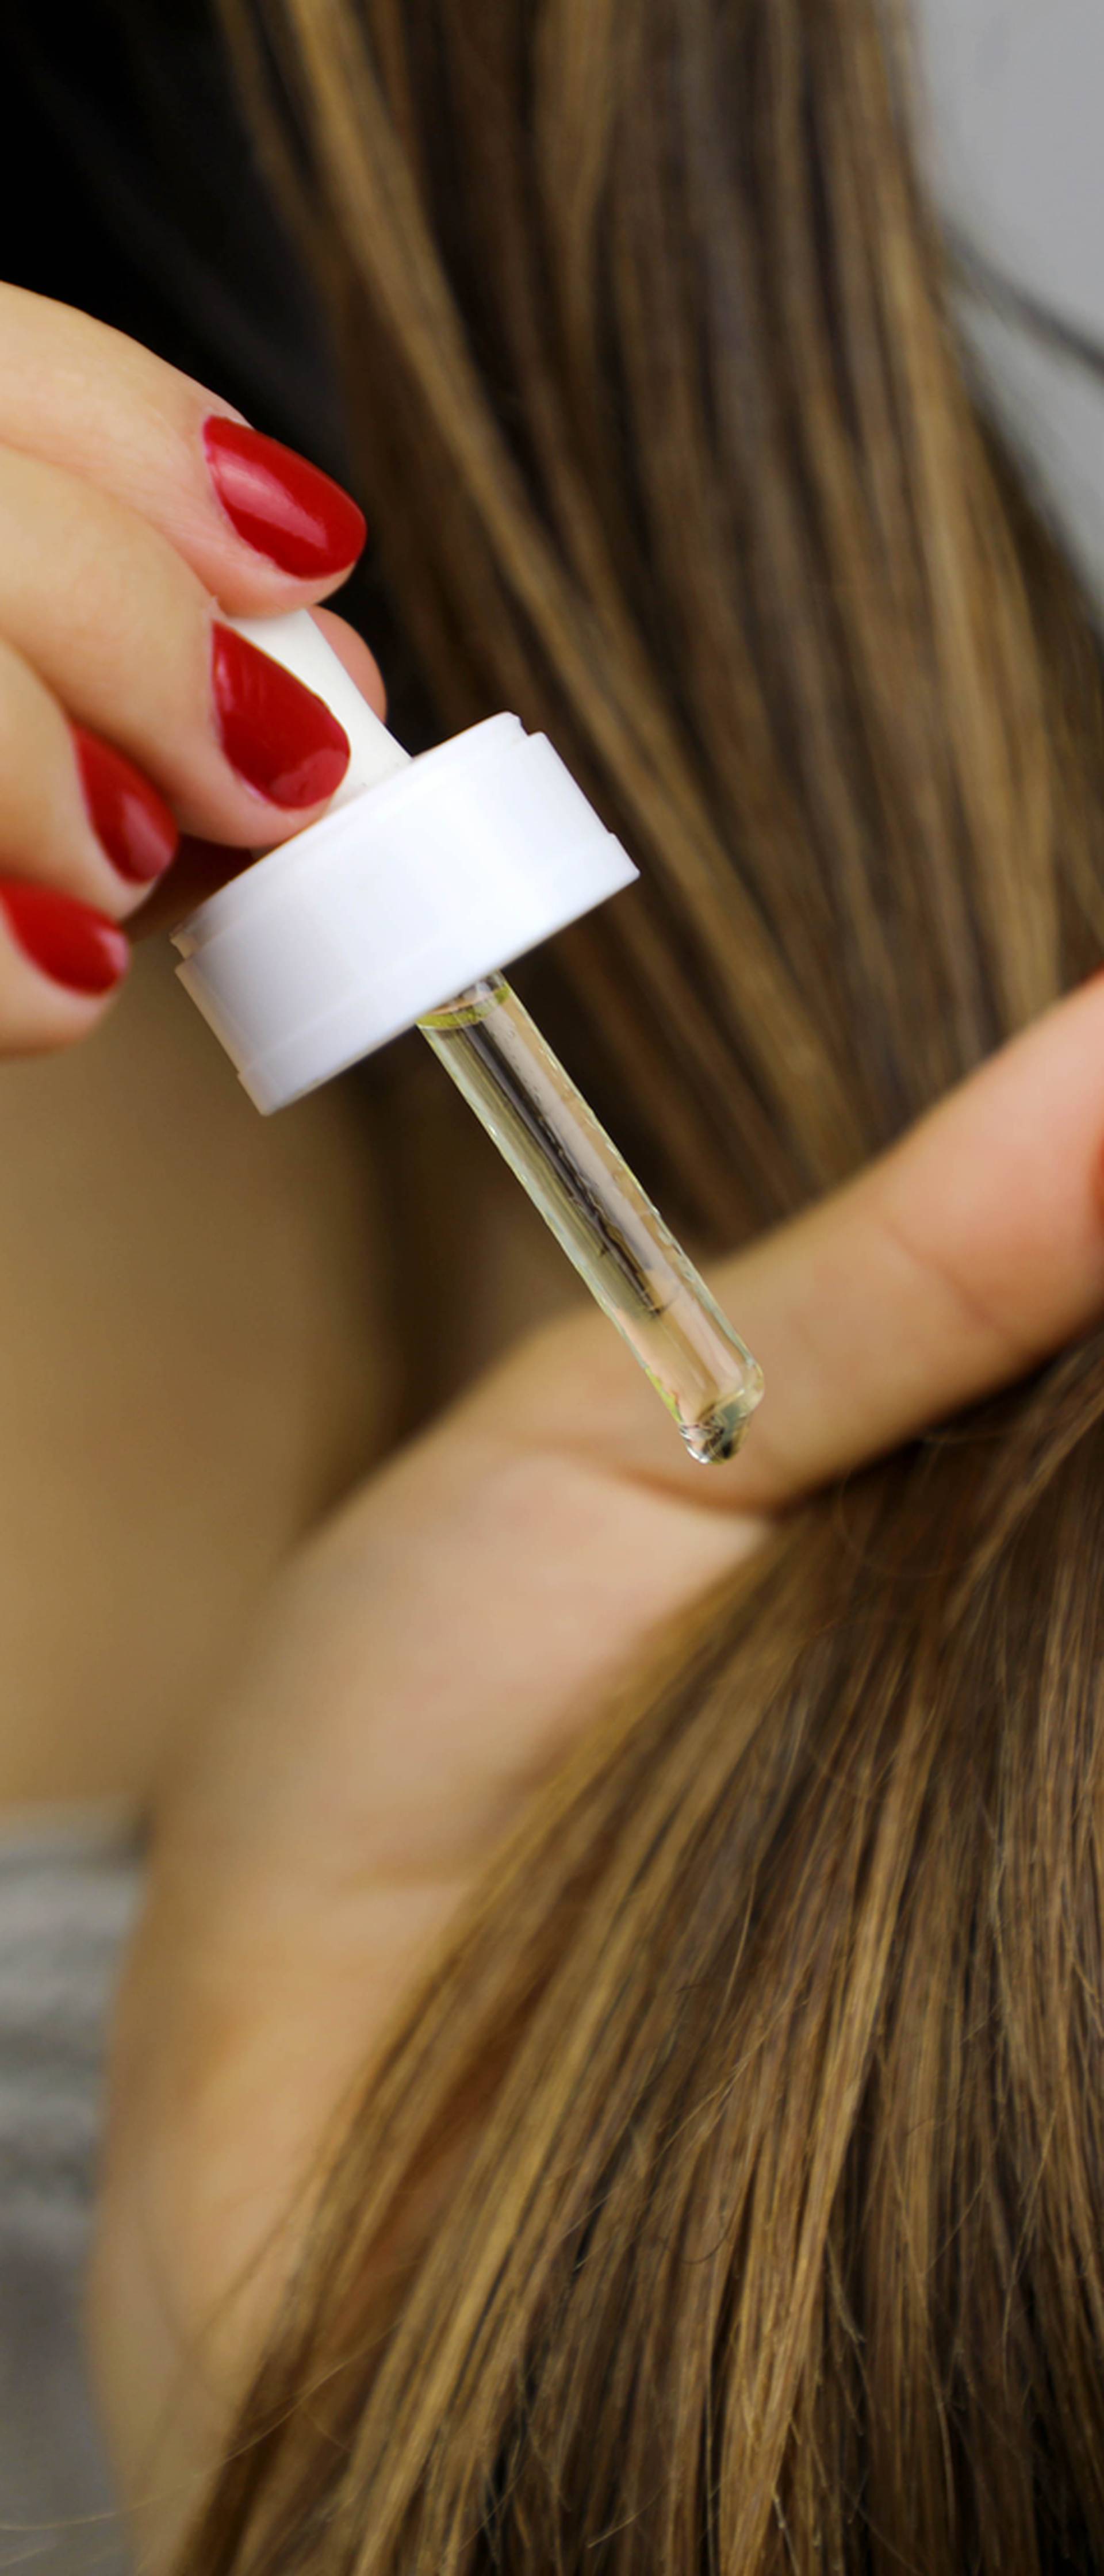 Prirodnim uljima njegujte kosu: Ulje jojobe hidratizira, a ricinus pomaže sa suhim vlasištem